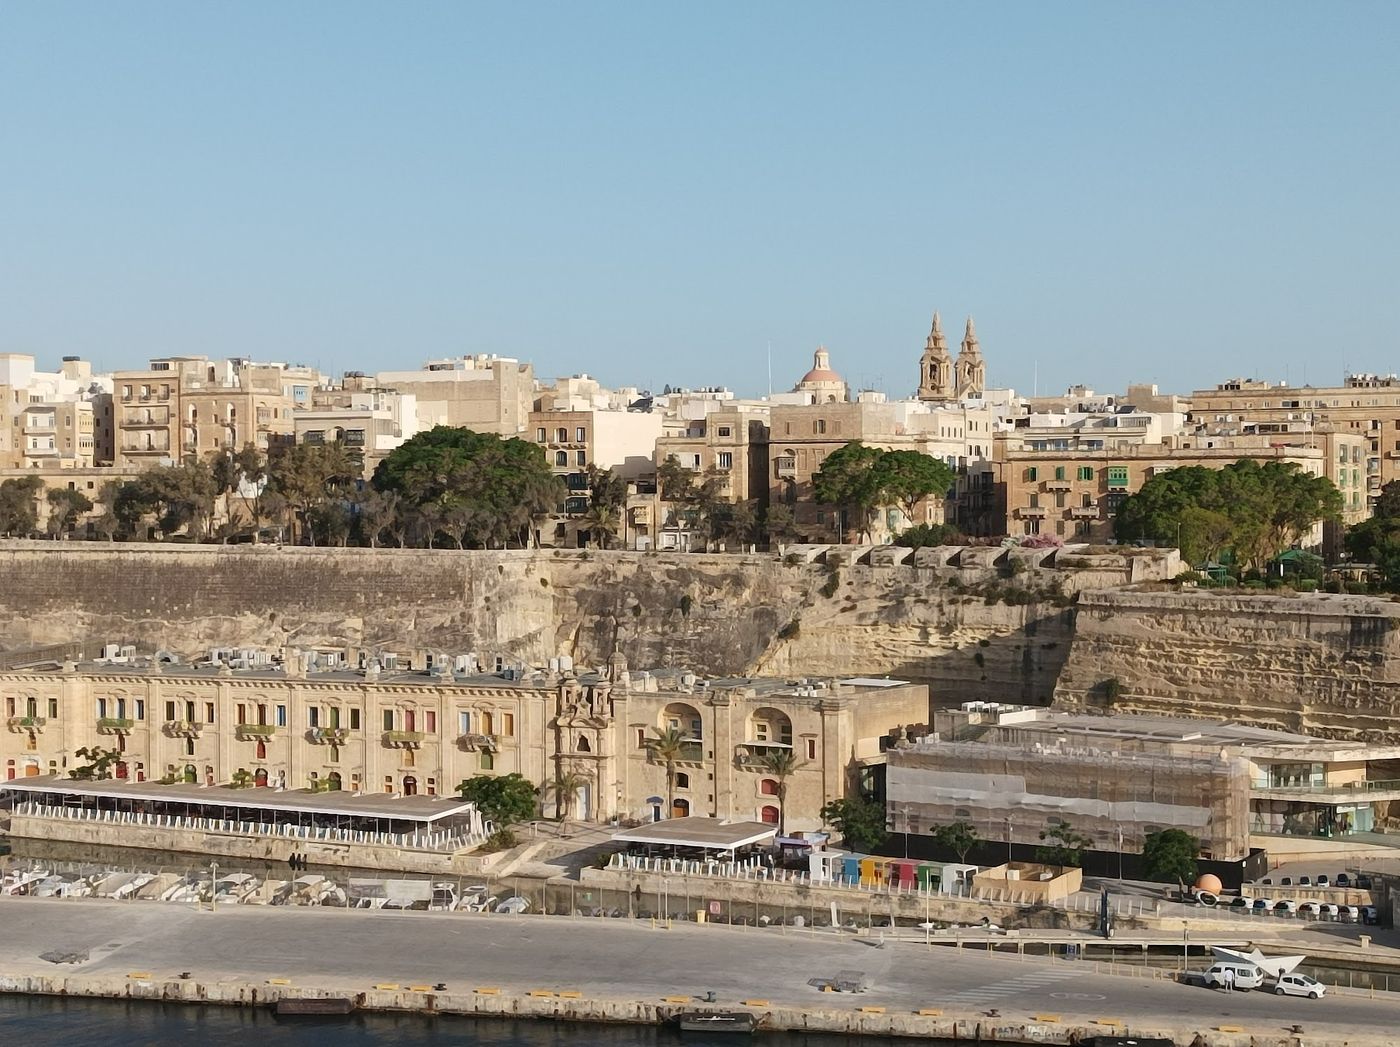 Farbenfrohes Fest am Valletta Waterfront